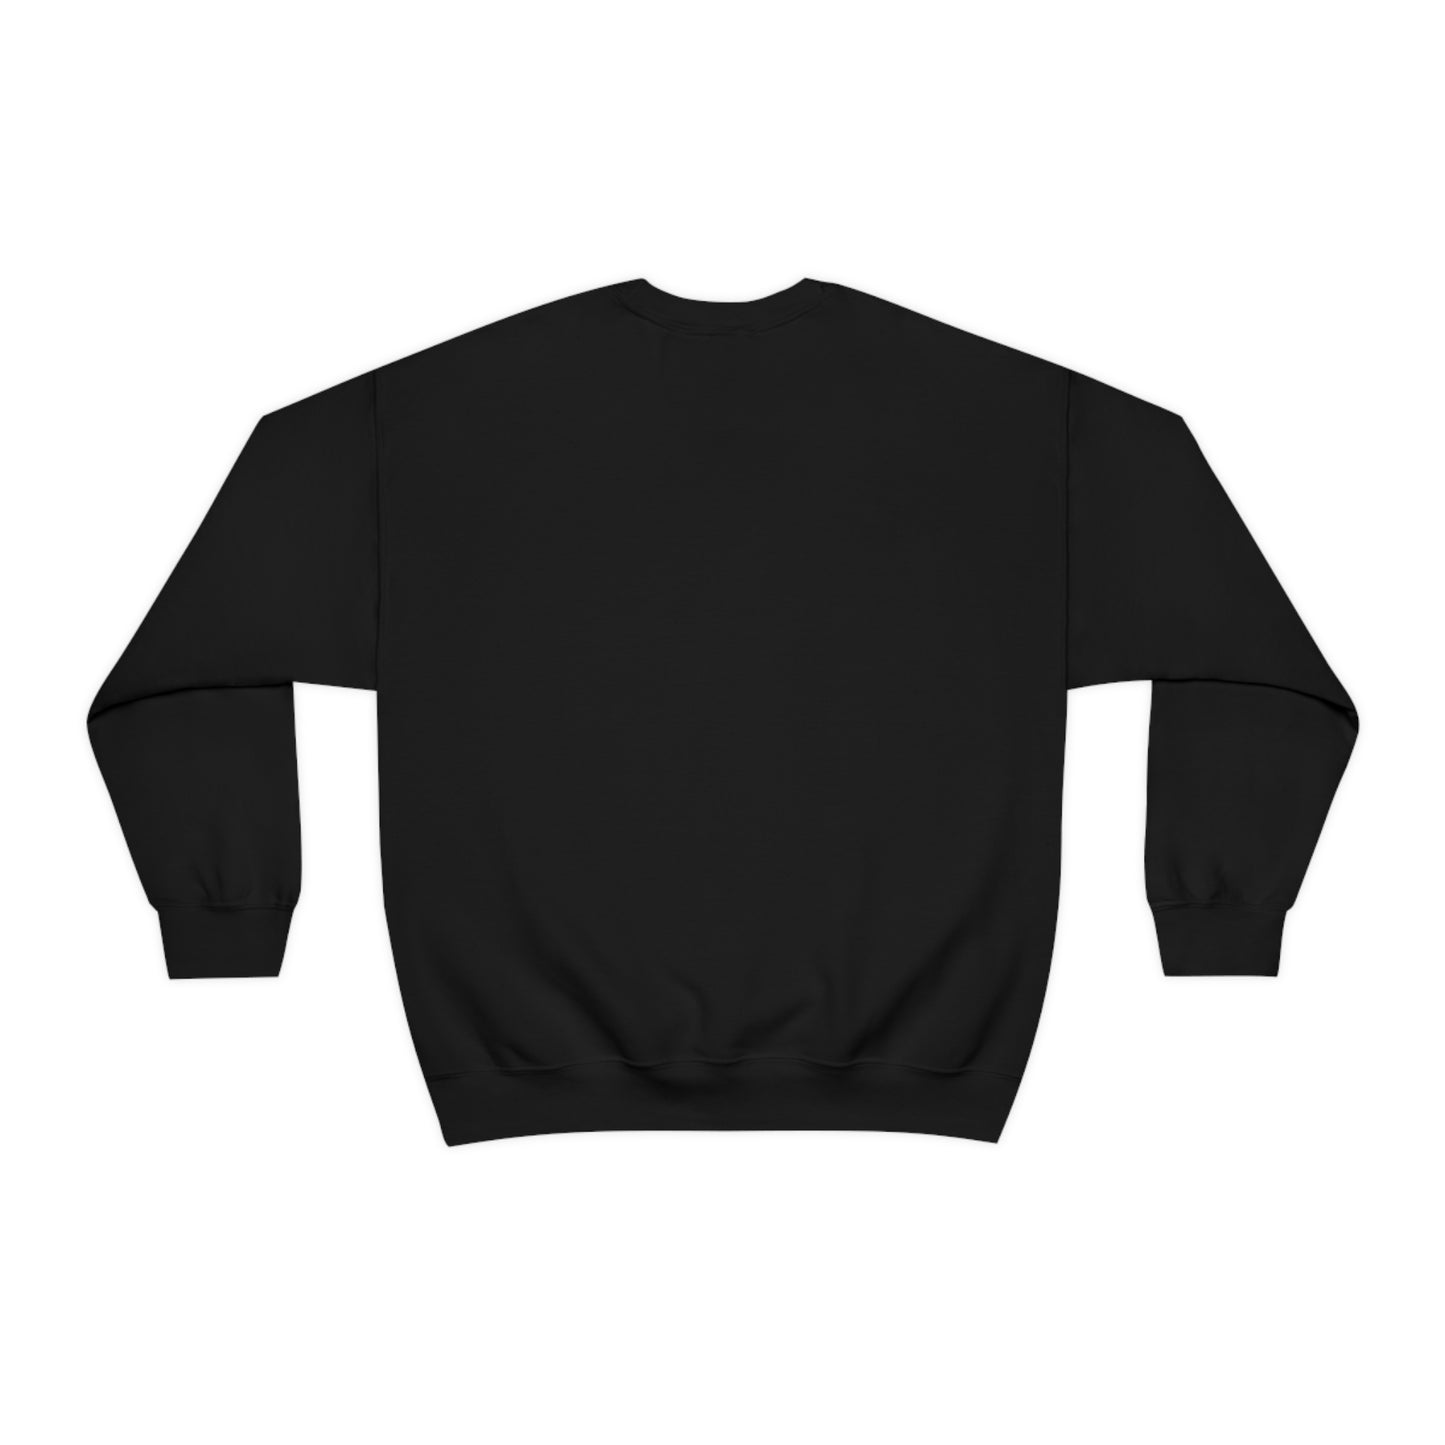 7-Eleven® Open 24 hours - Unisex Heavy Blend™ Crewneck Sweatshirt